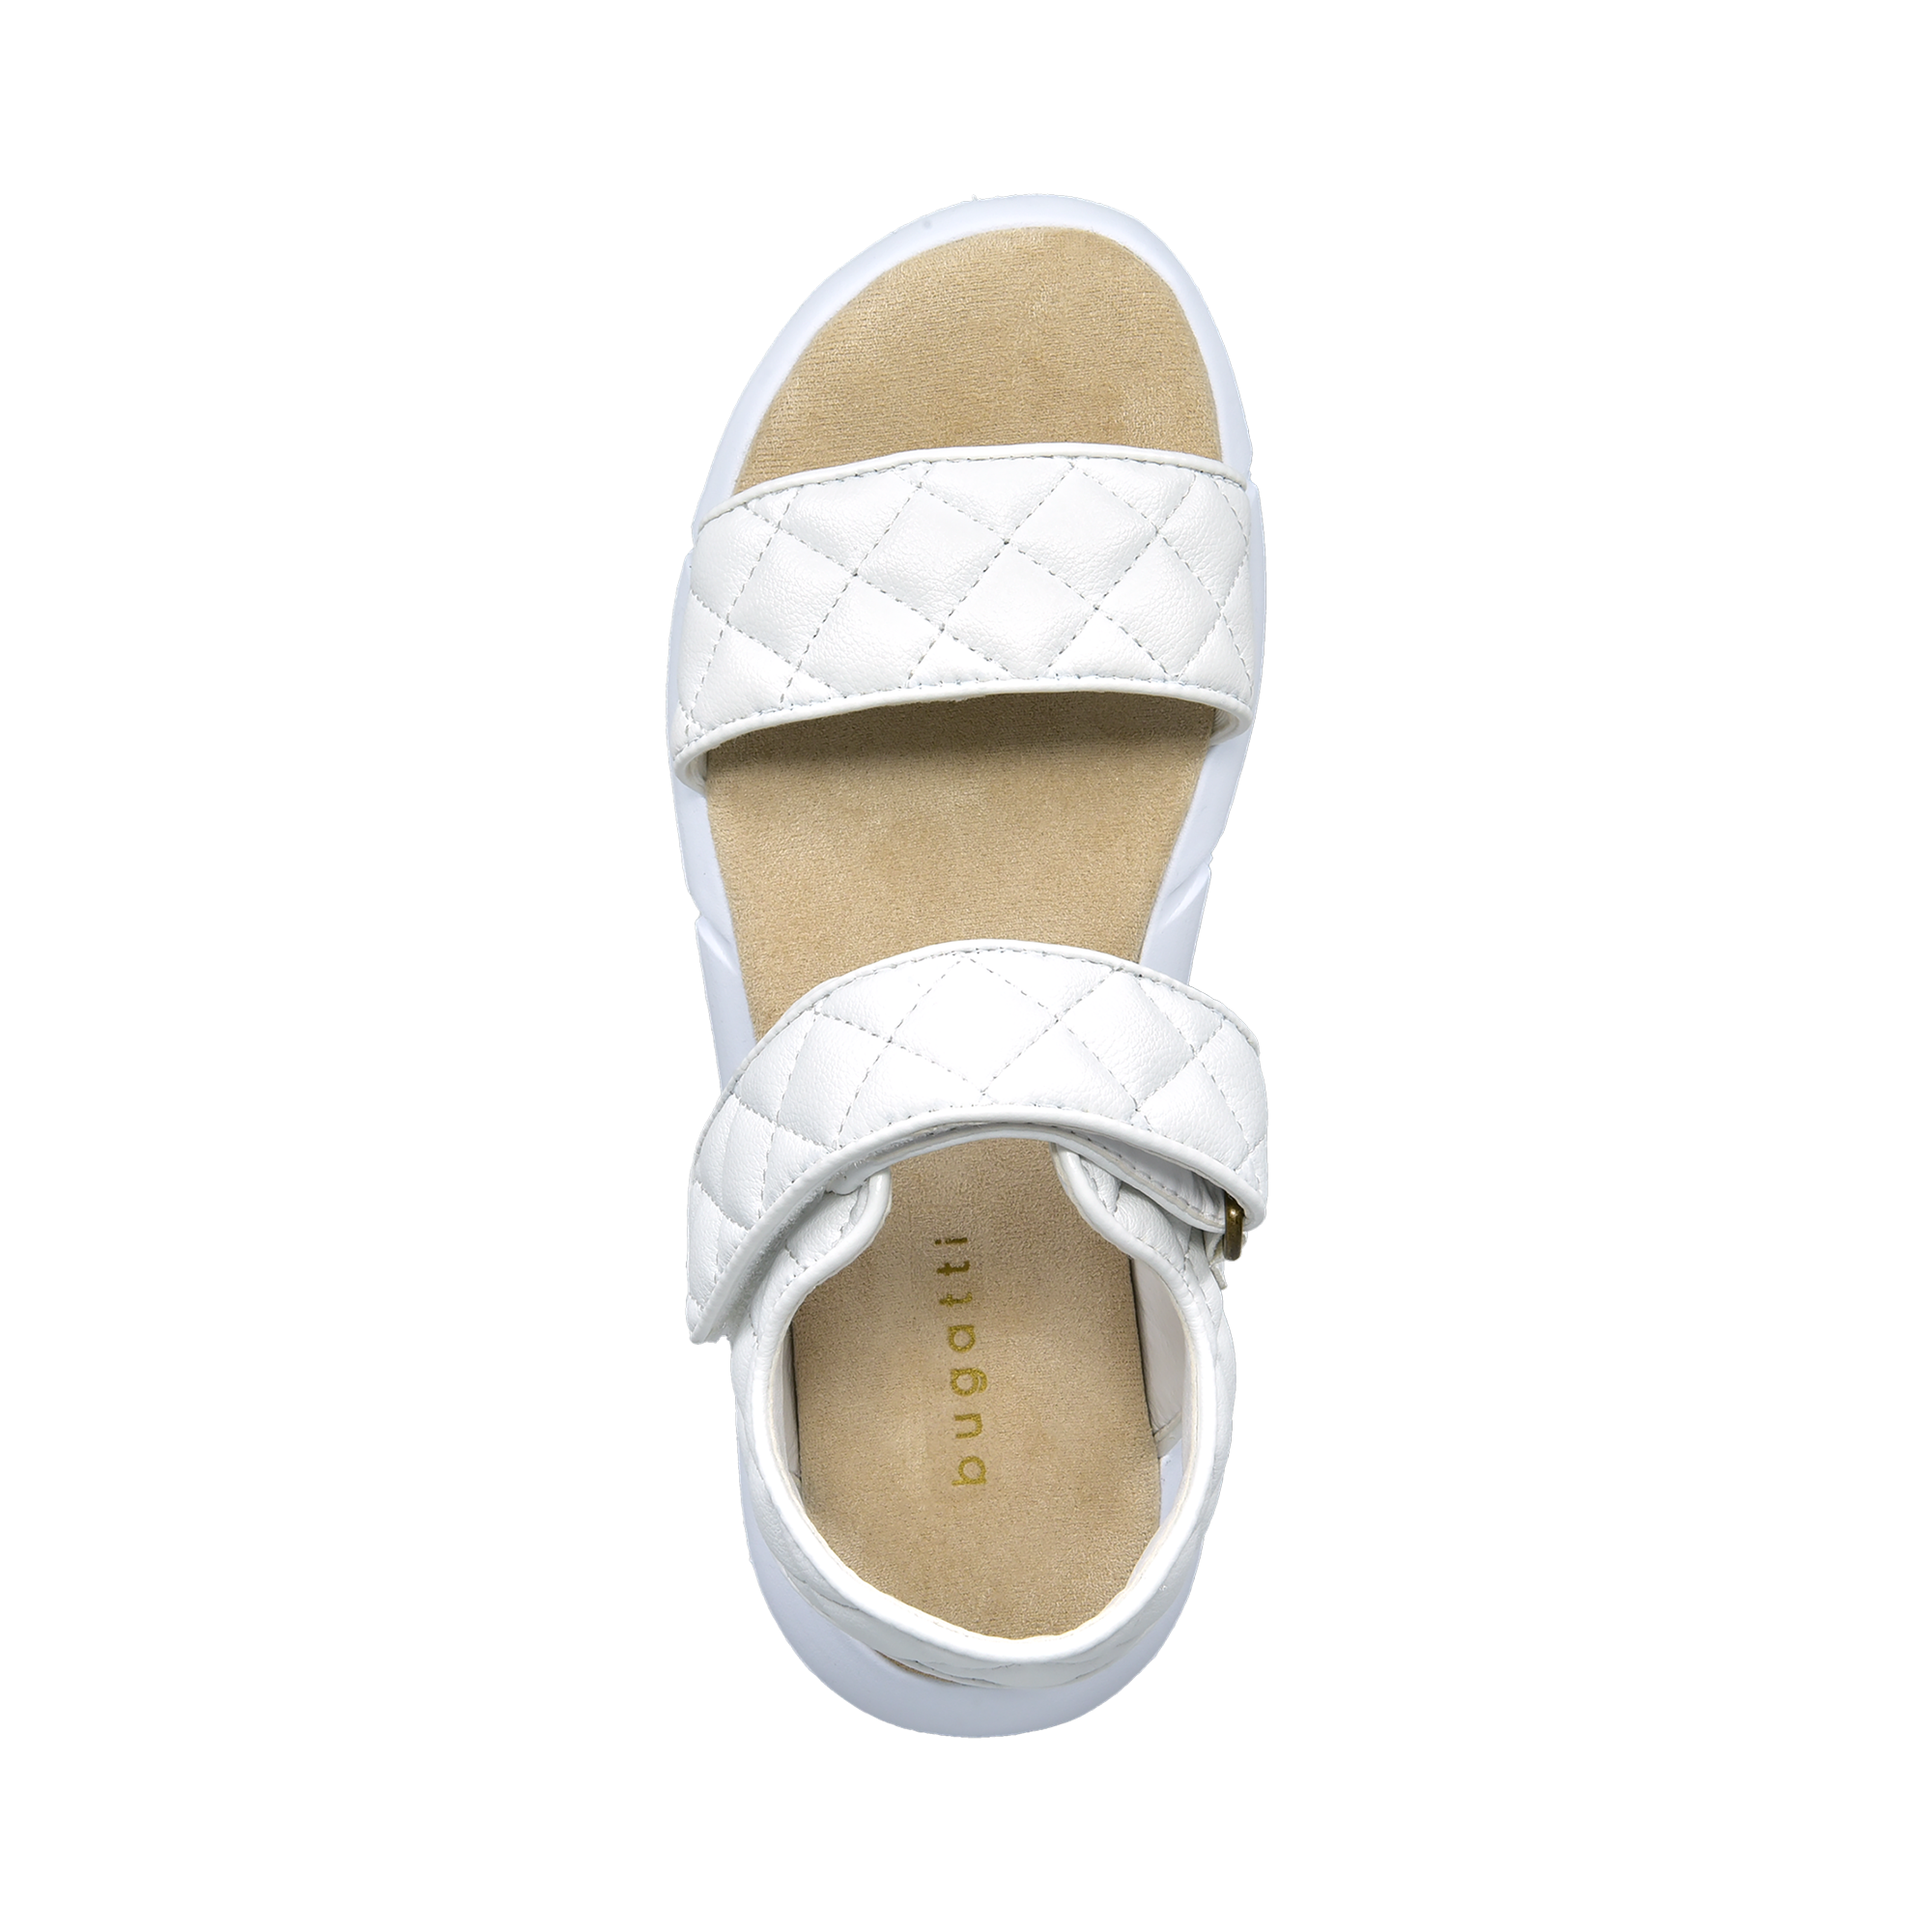 Sandal white